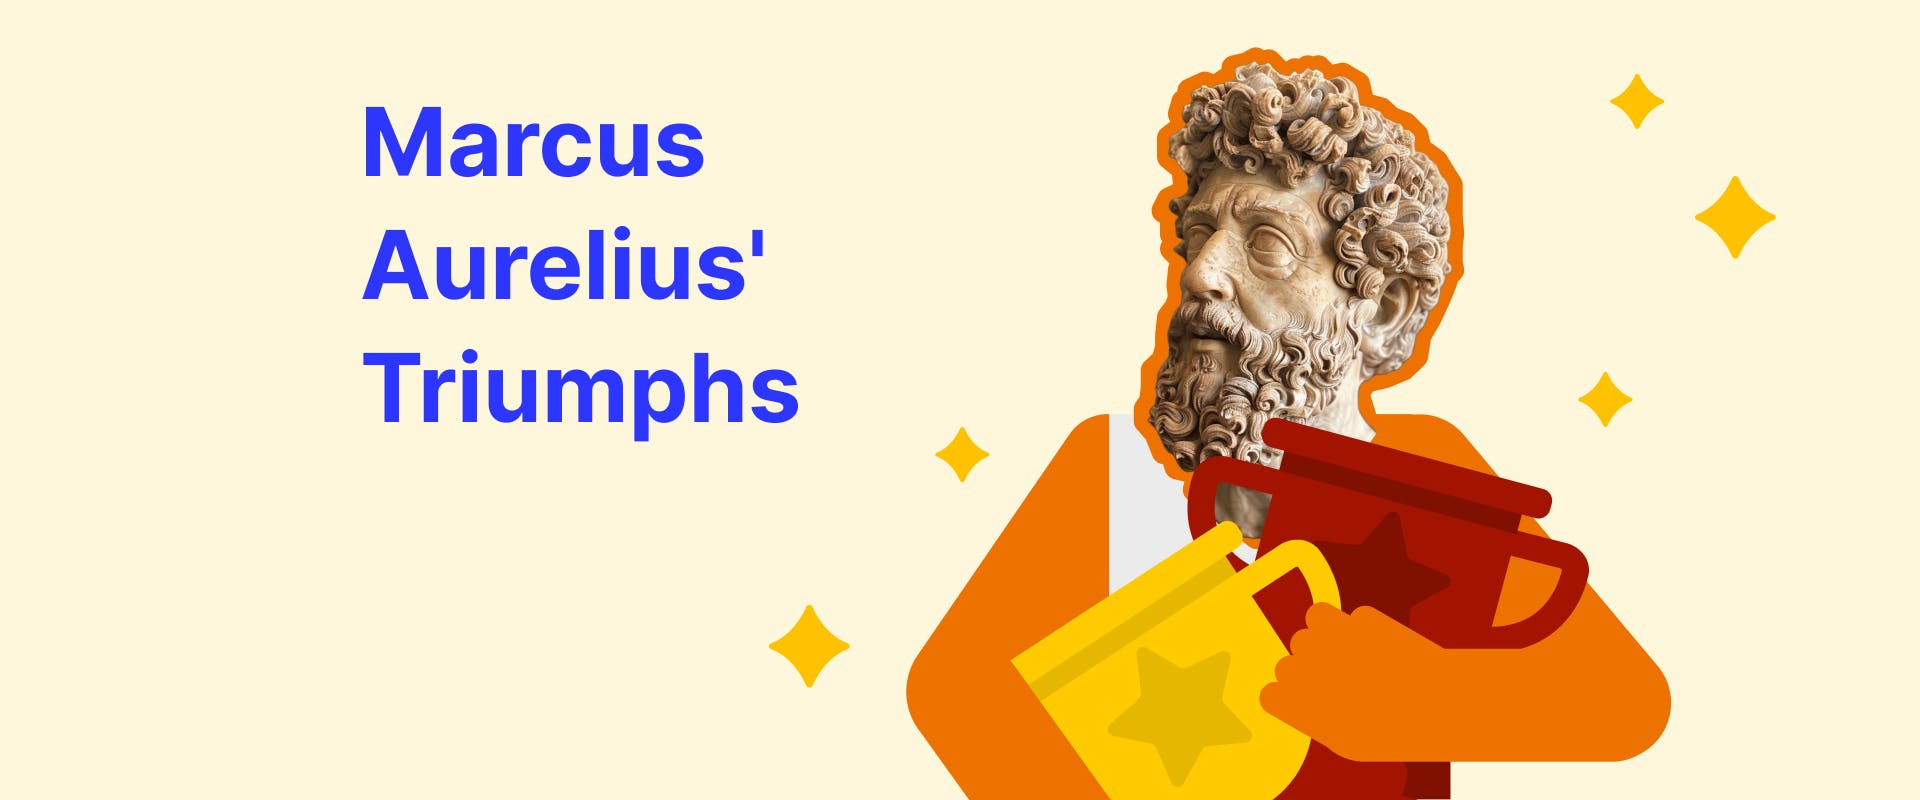 Marcus Aurelius' Accomplishments